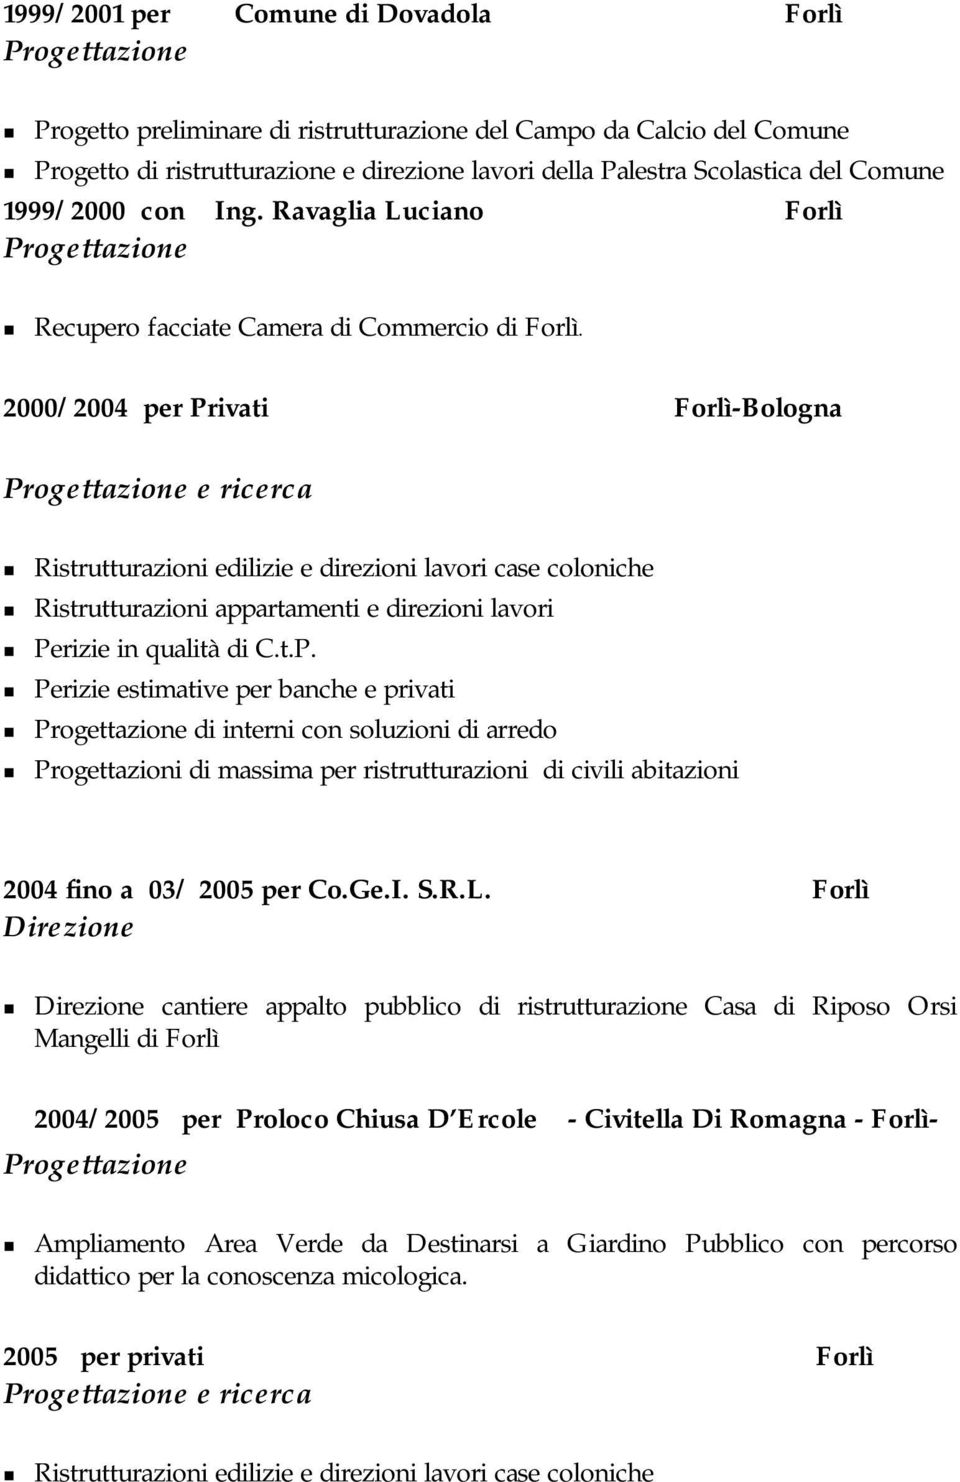 2000/2004 per Privati Forlì-Bologna Ristrutturazioni edilizie e direzioni lavori case coloniche Ristrutturazioni appartamenti e direzioni lavori Perizie in qualità di C.t.P. per banche e privati di interni con soluzioni di arredo 2004 fino a 03/ 2005 per Co.